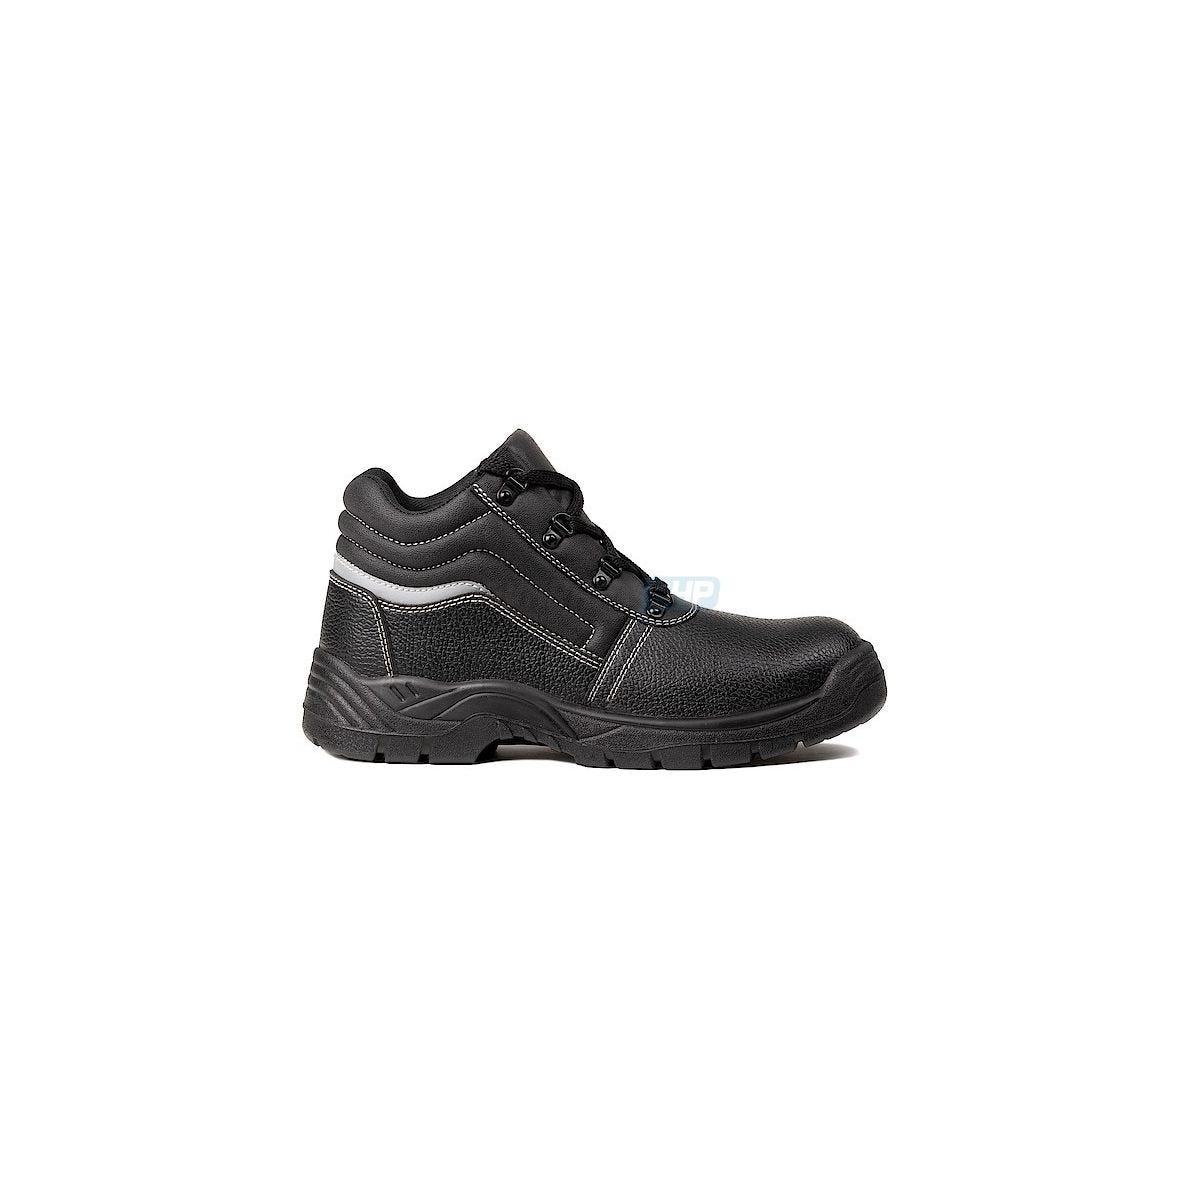 Chaussures de sécurité NACRITE S1P Haute Noir - COVERGUARD - Taille 47 0